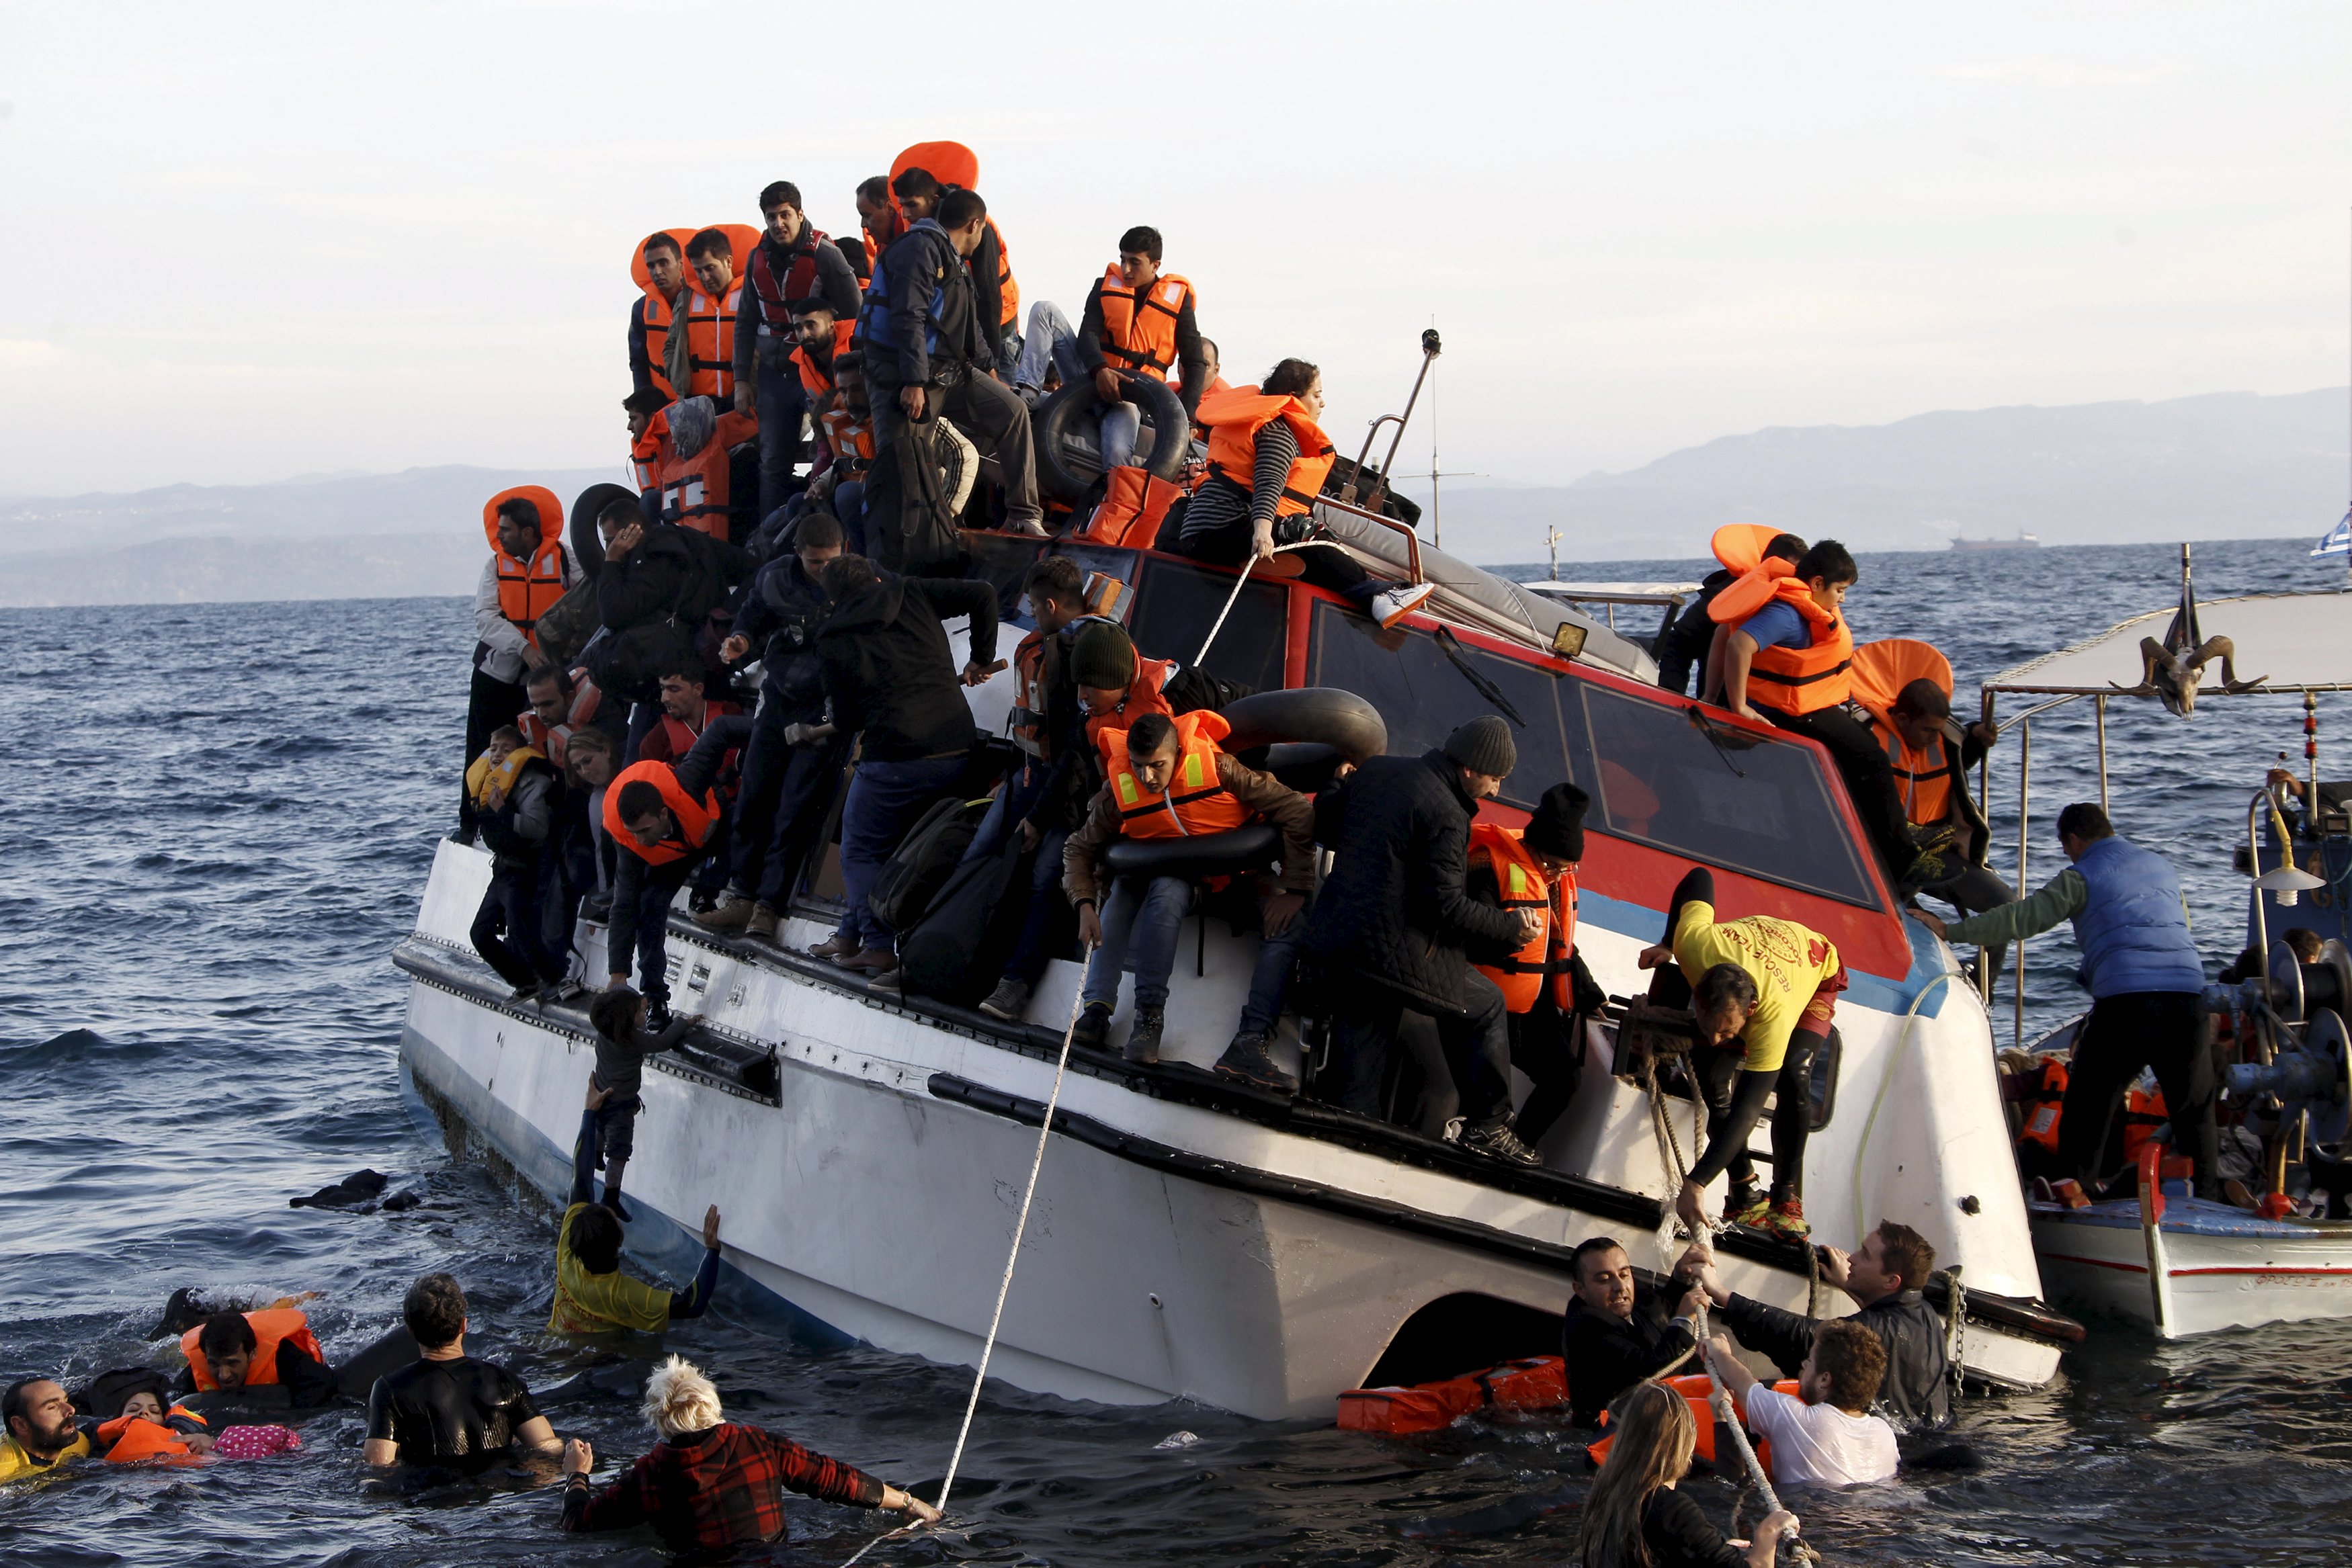 Pengungsi, yang kebanyakan dari Suriah, berjuang meninggalkan perahu berpenumpang sekitar 150 pengungsi saat tiba di Pulau Lesbos Yunani, setelah menyebrangi laut Aegean dari Turki, Jumat (30/10). Tidak ada pengungsi tewas yang menggunakan kapal tersebut, menurut saksi Reuters. Korban tewas tenggelam di laut yang terjadi belakangan ini karena cuaca di laut Aegean semakin memburuk, beralih dari koridor angin laut ke jalur yang mematikan bagi ribuan pengungsi yang menyebrang dari Turki ke Yunani. REUTERS/Giorgos Moutafis.